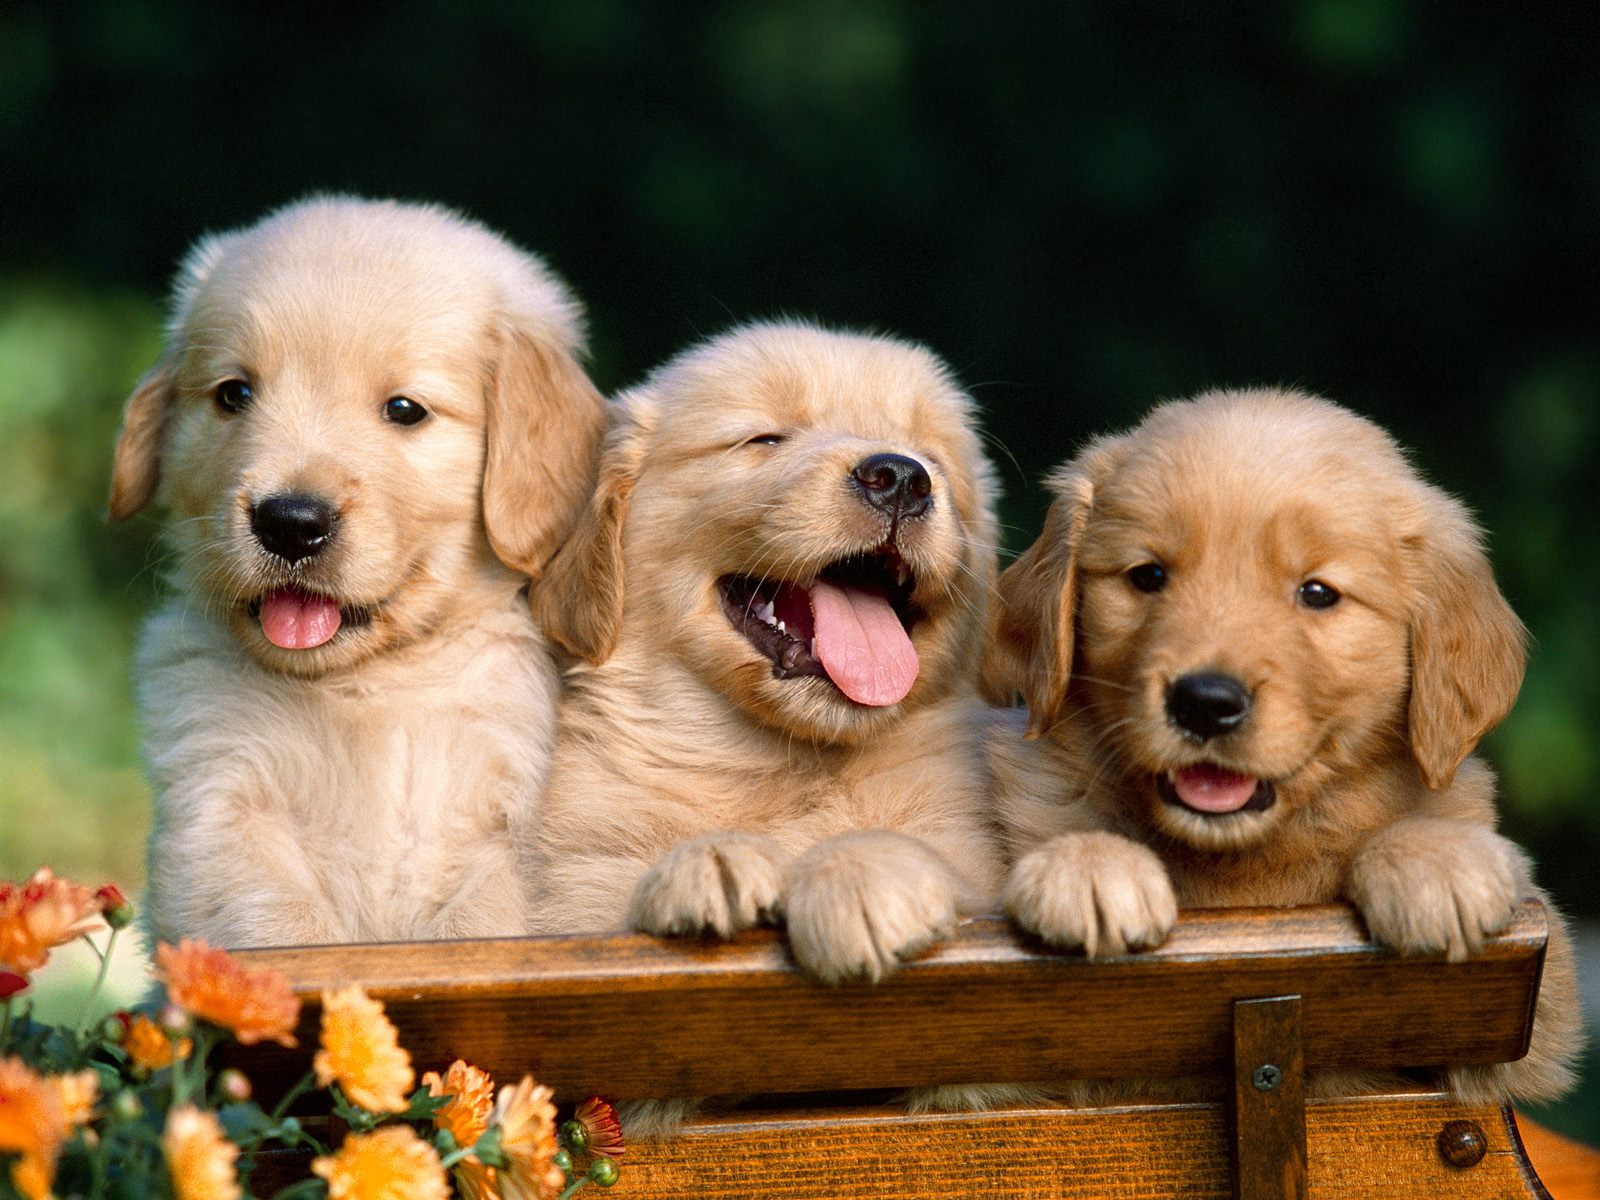 Puppy World: Cute Golden Retriever Puppy Pictures